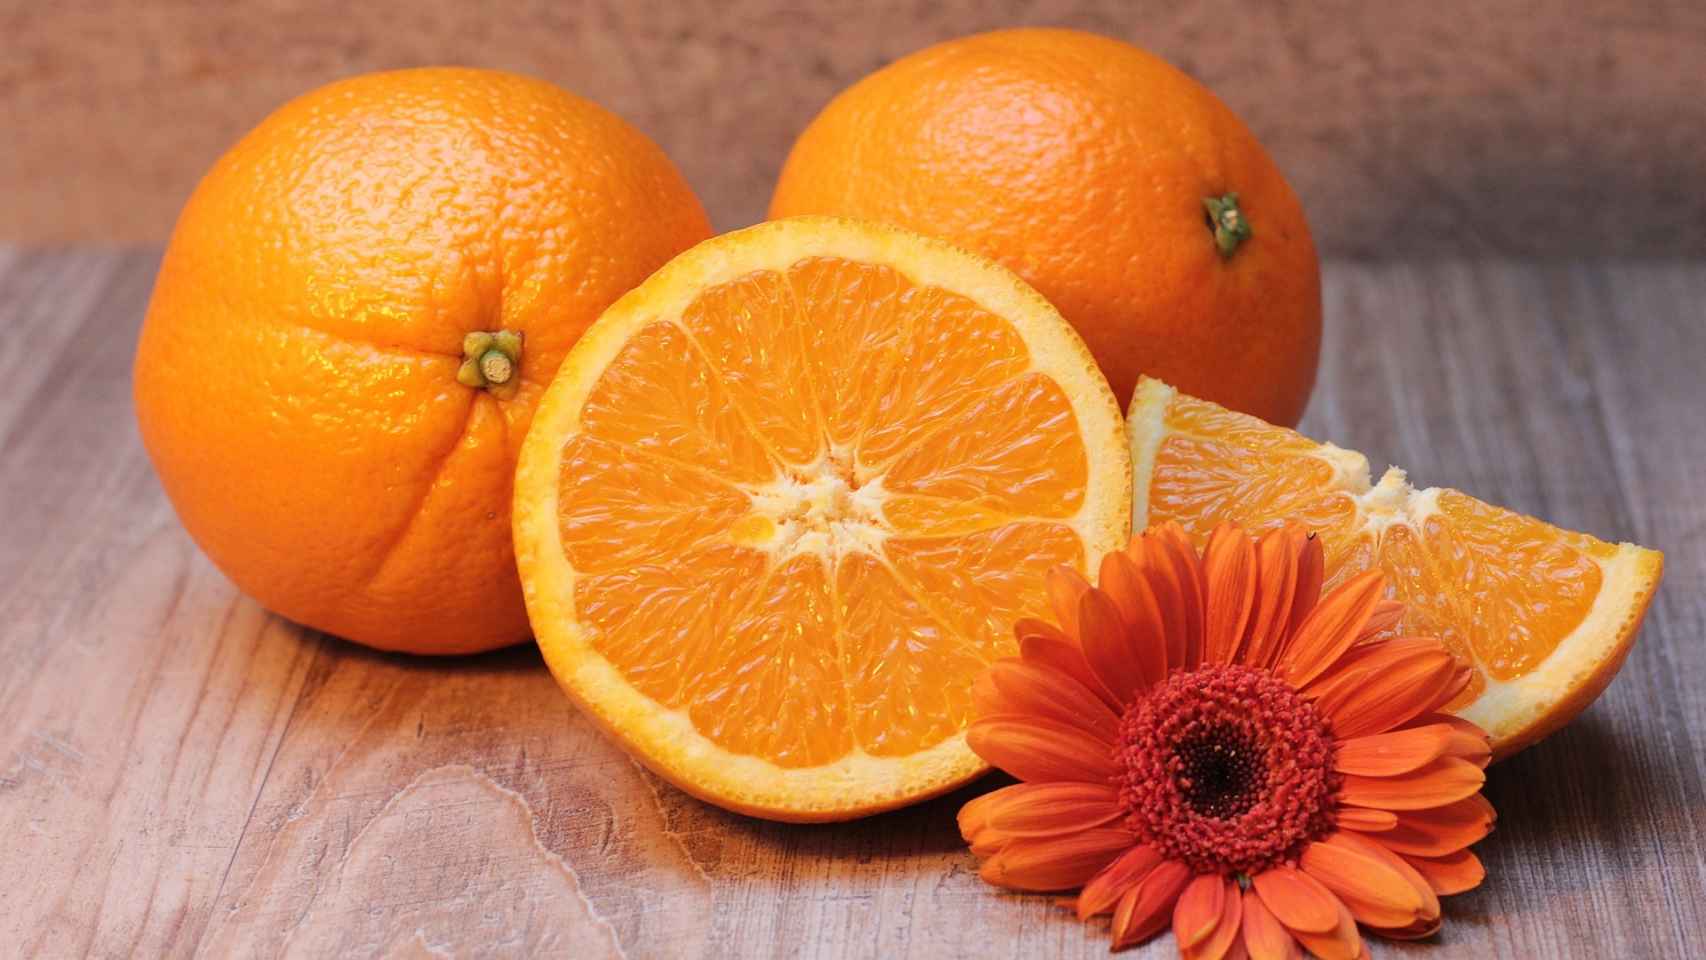 Las naranjas son una fruta con muchas propiedades, pero no es recomendable para quienes son propensos a sufrir acidez.